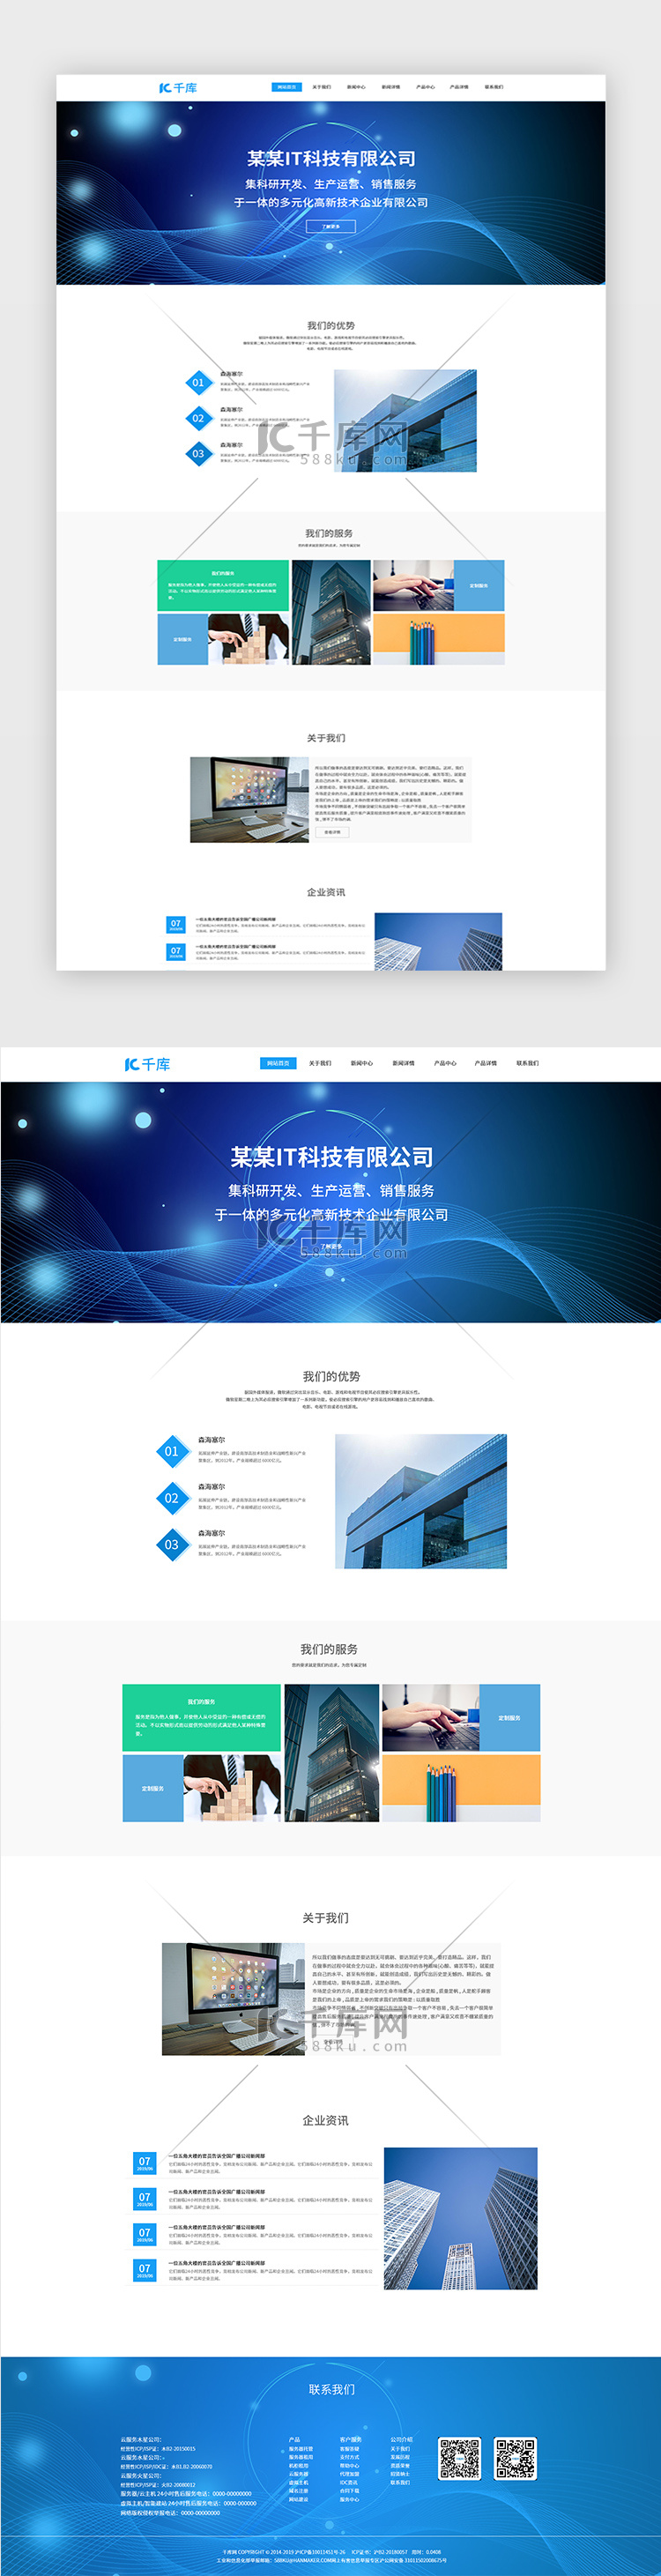 蓝色IT商务科技网站首页